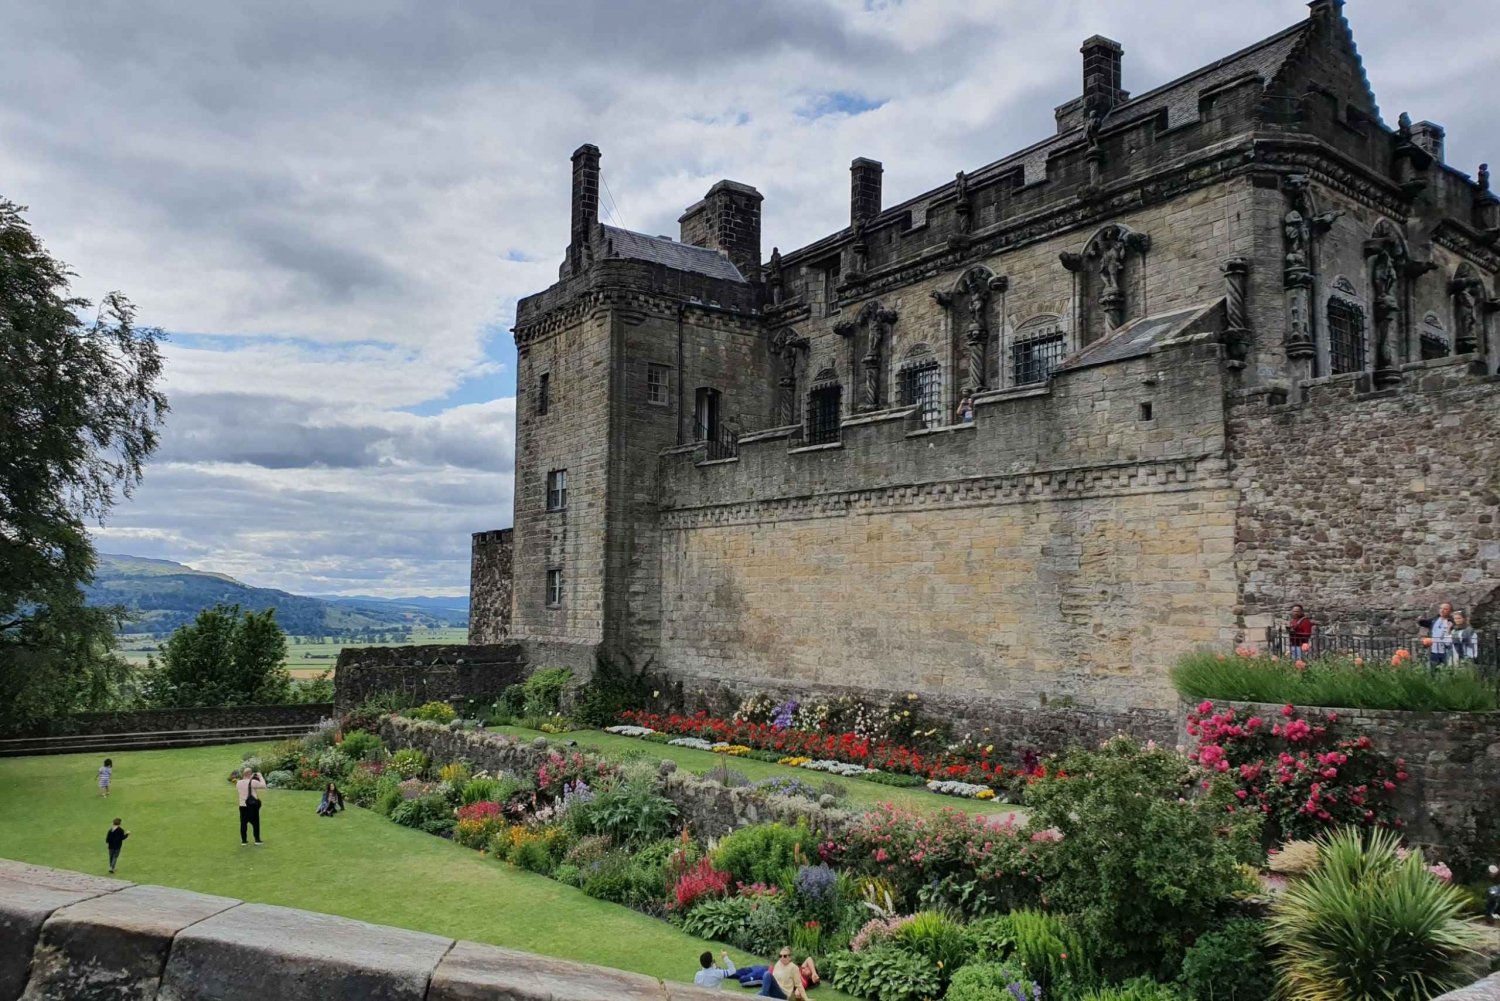 De Edimburgo: Castelo de Stirling, Kelpies e Lago Lomond